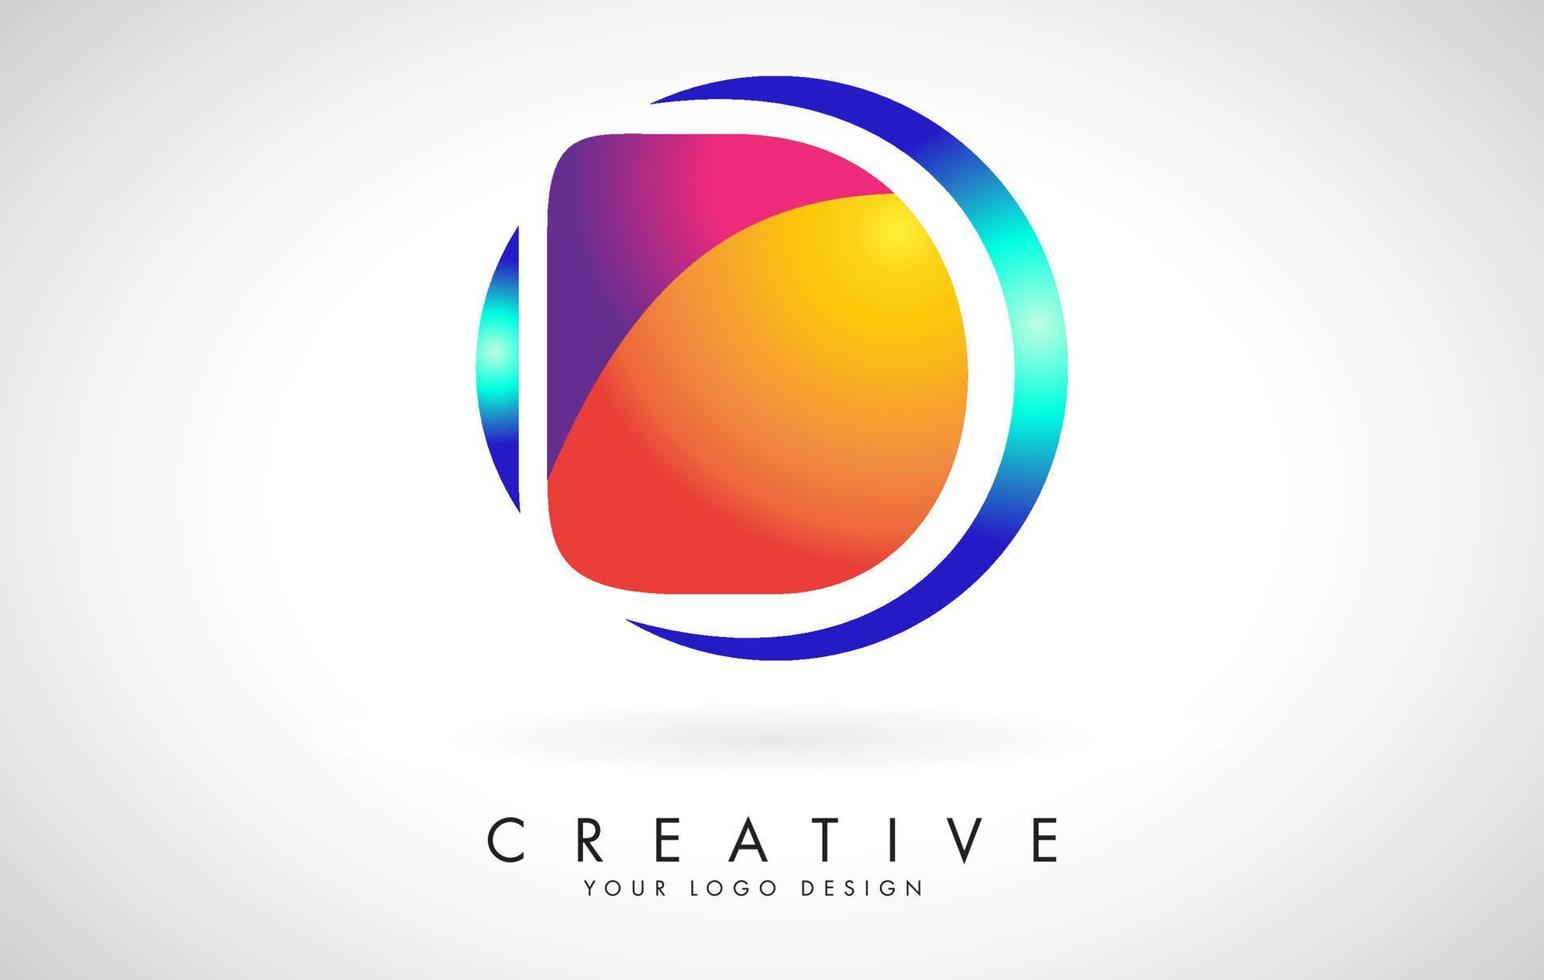 Diseño de logotipo letra d creativa azul y rosa con puntos. entretenimiento corporativo amigable, medios, tecnología, diseño de vectores de negocios digitales con gotas.